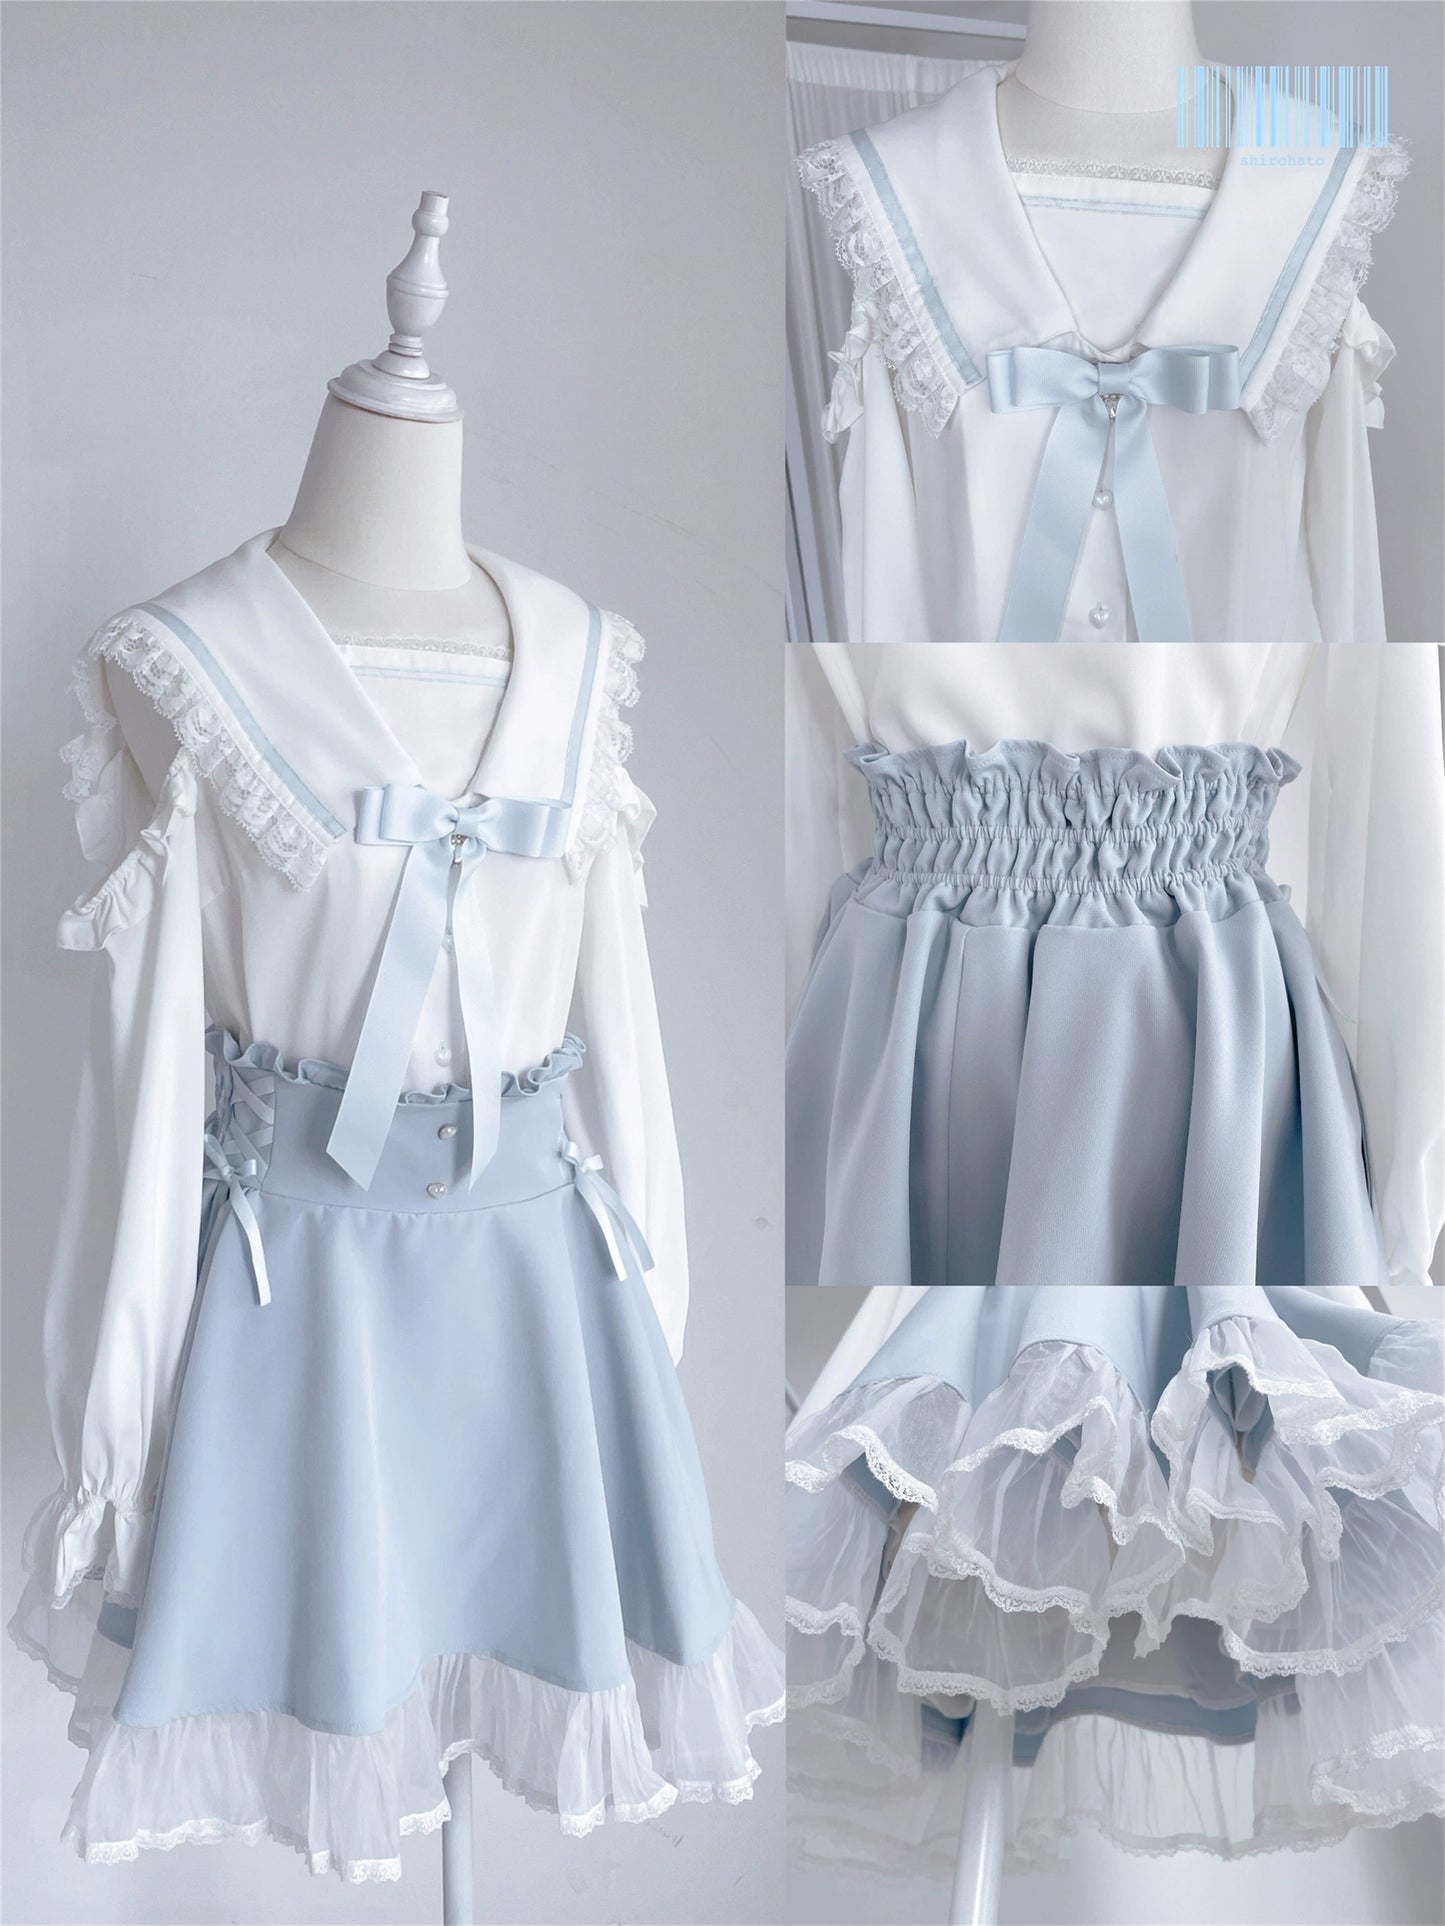 Jirai Kei Skirt Sweet Pink Blue Skirt With Flounce Hem 35800:504090